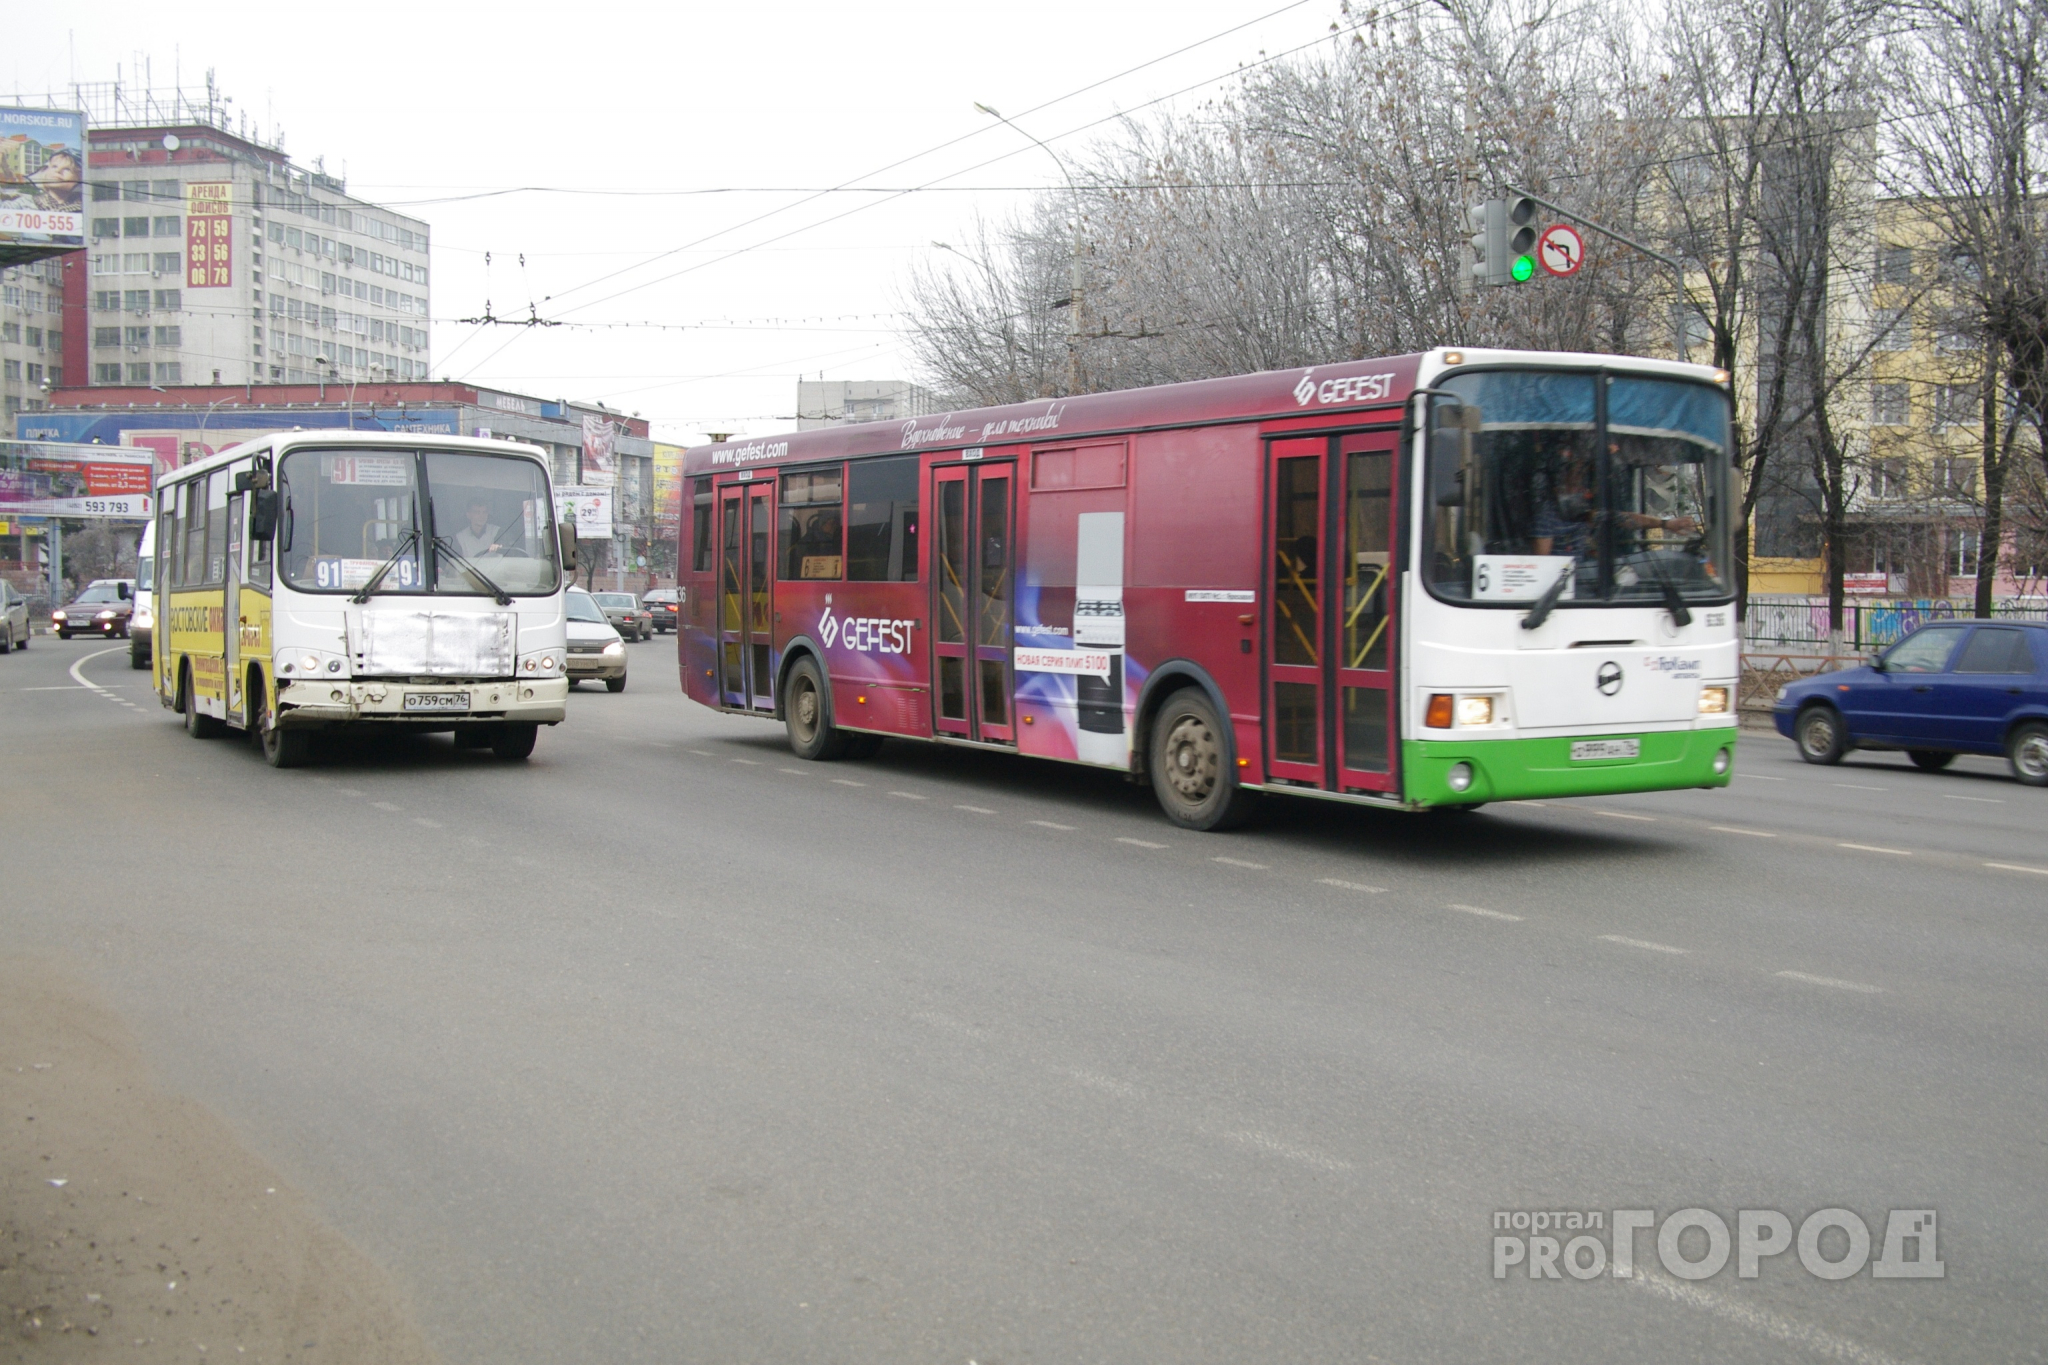 Сегодня сотрудники ГИБДД проверяют городские маршрутки и автобусы